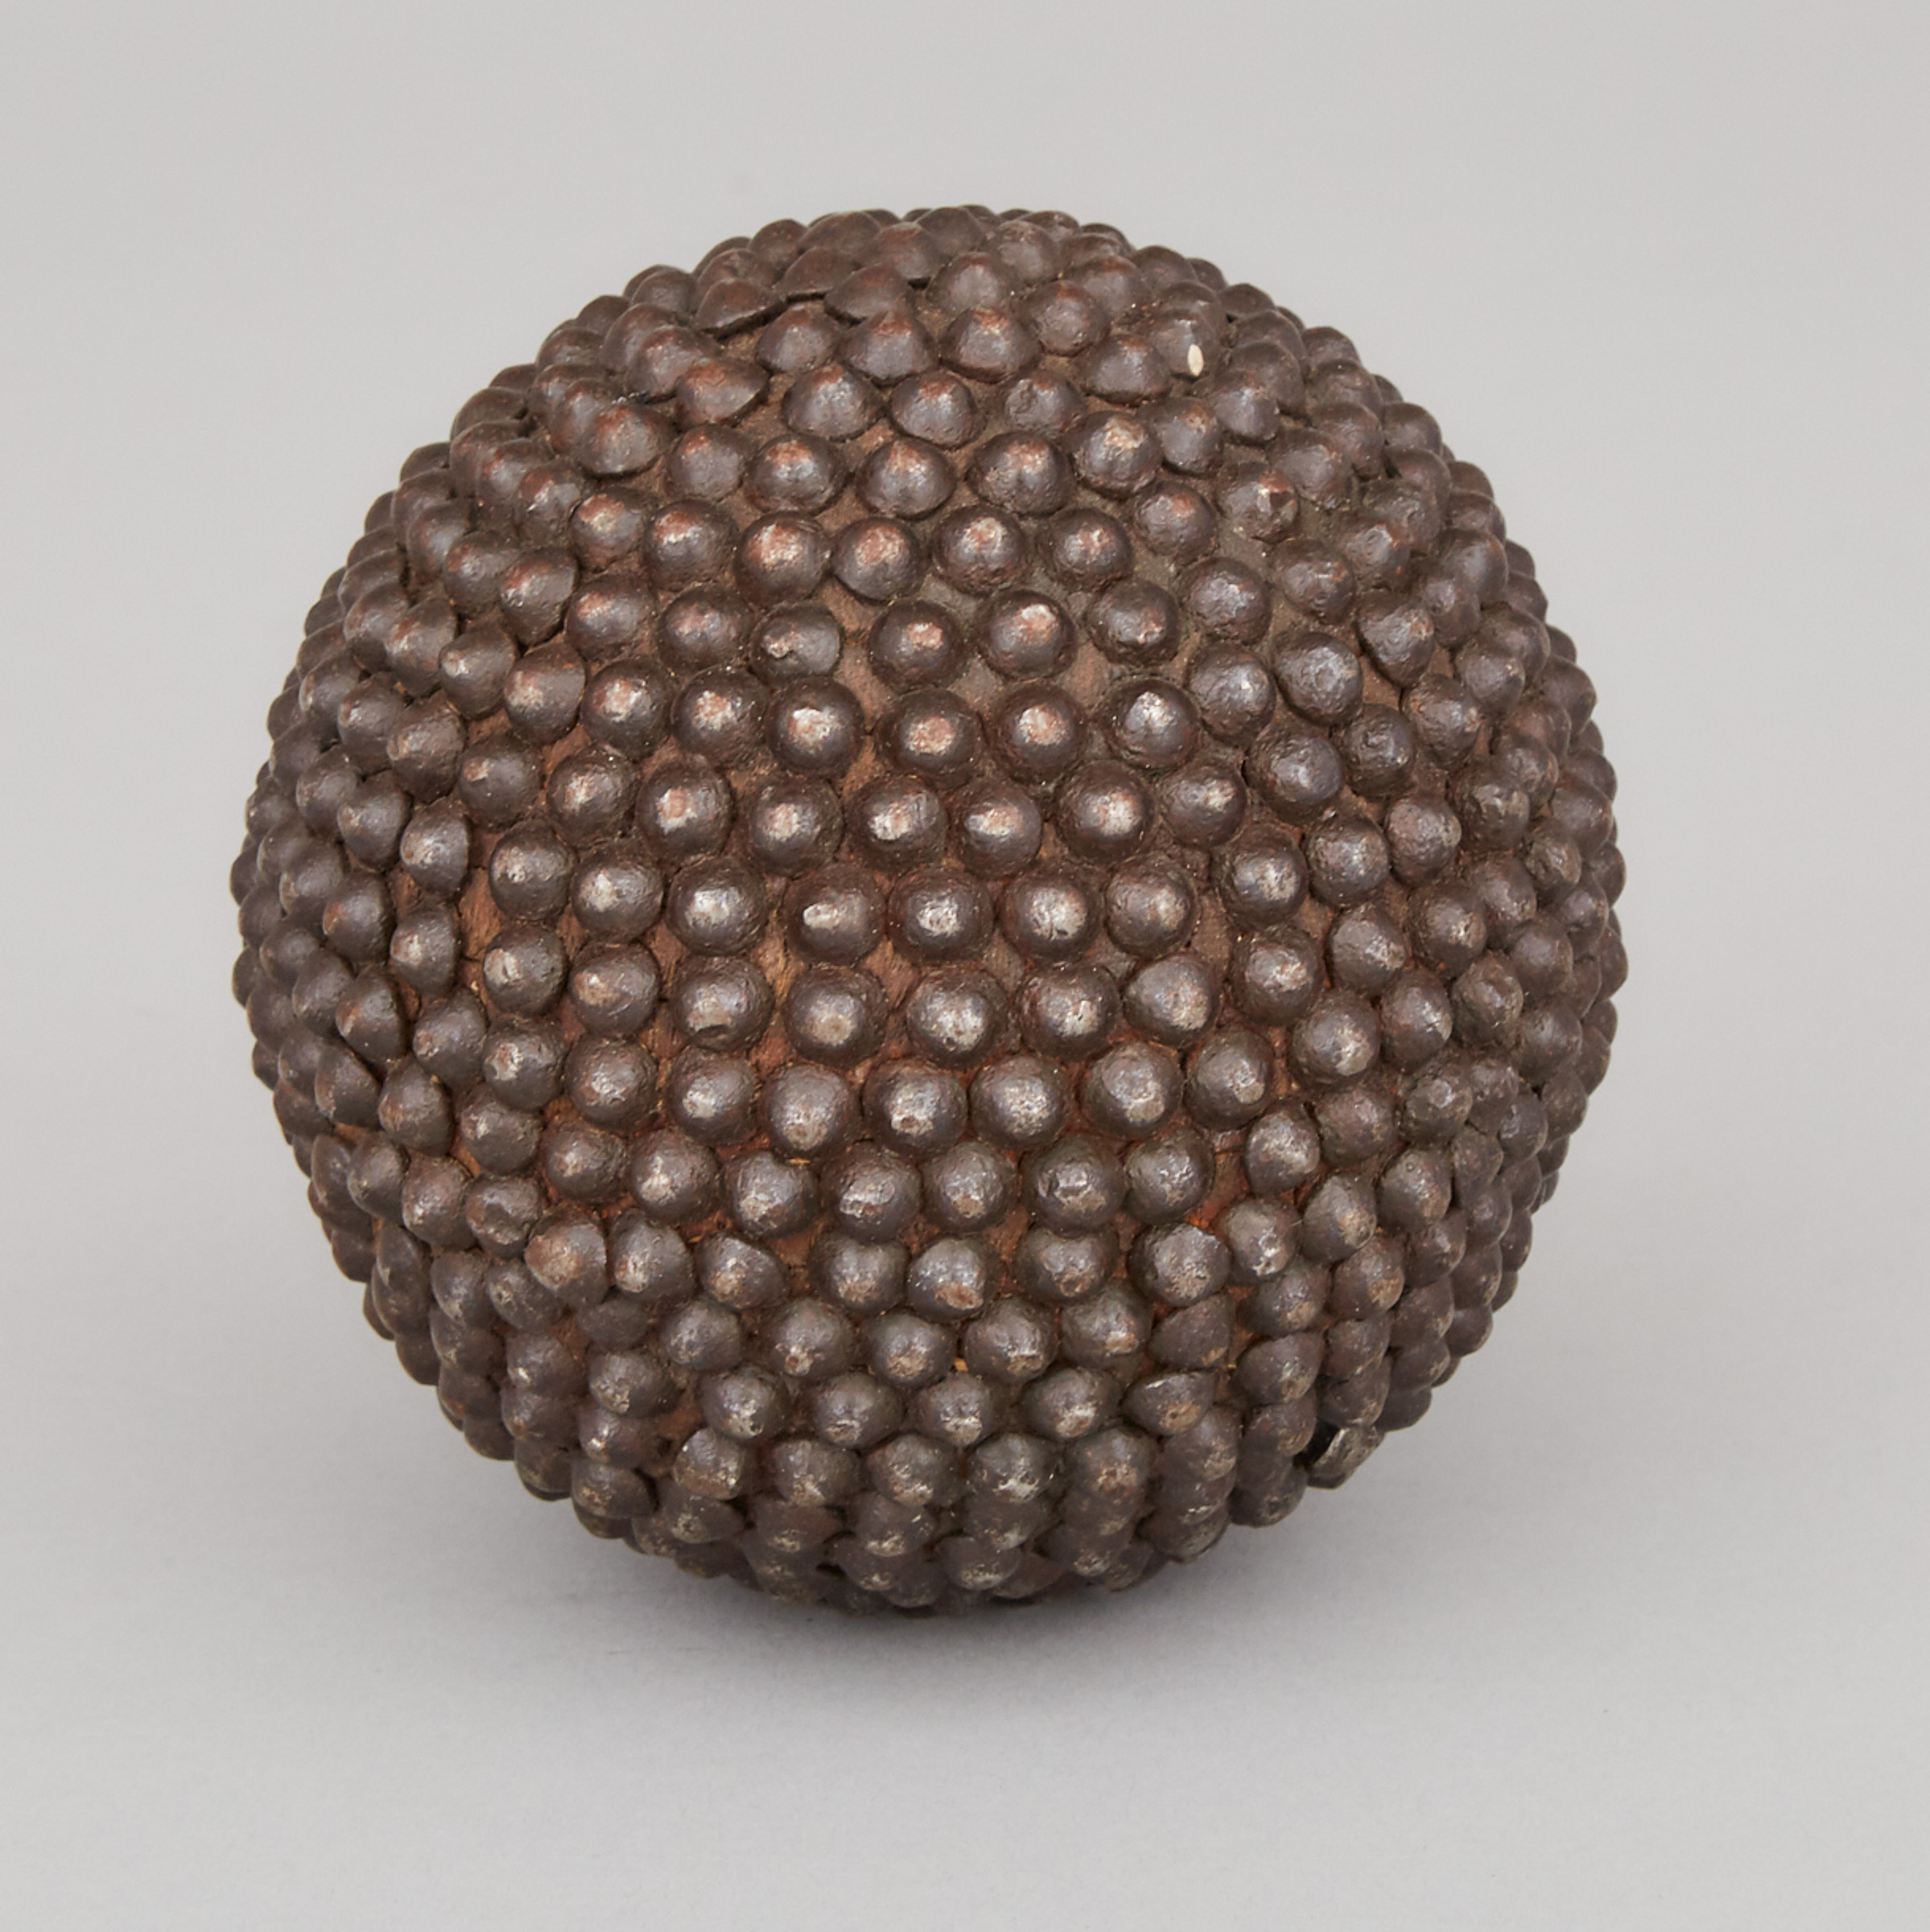 Shrapnel Cannon Ball, 19th century